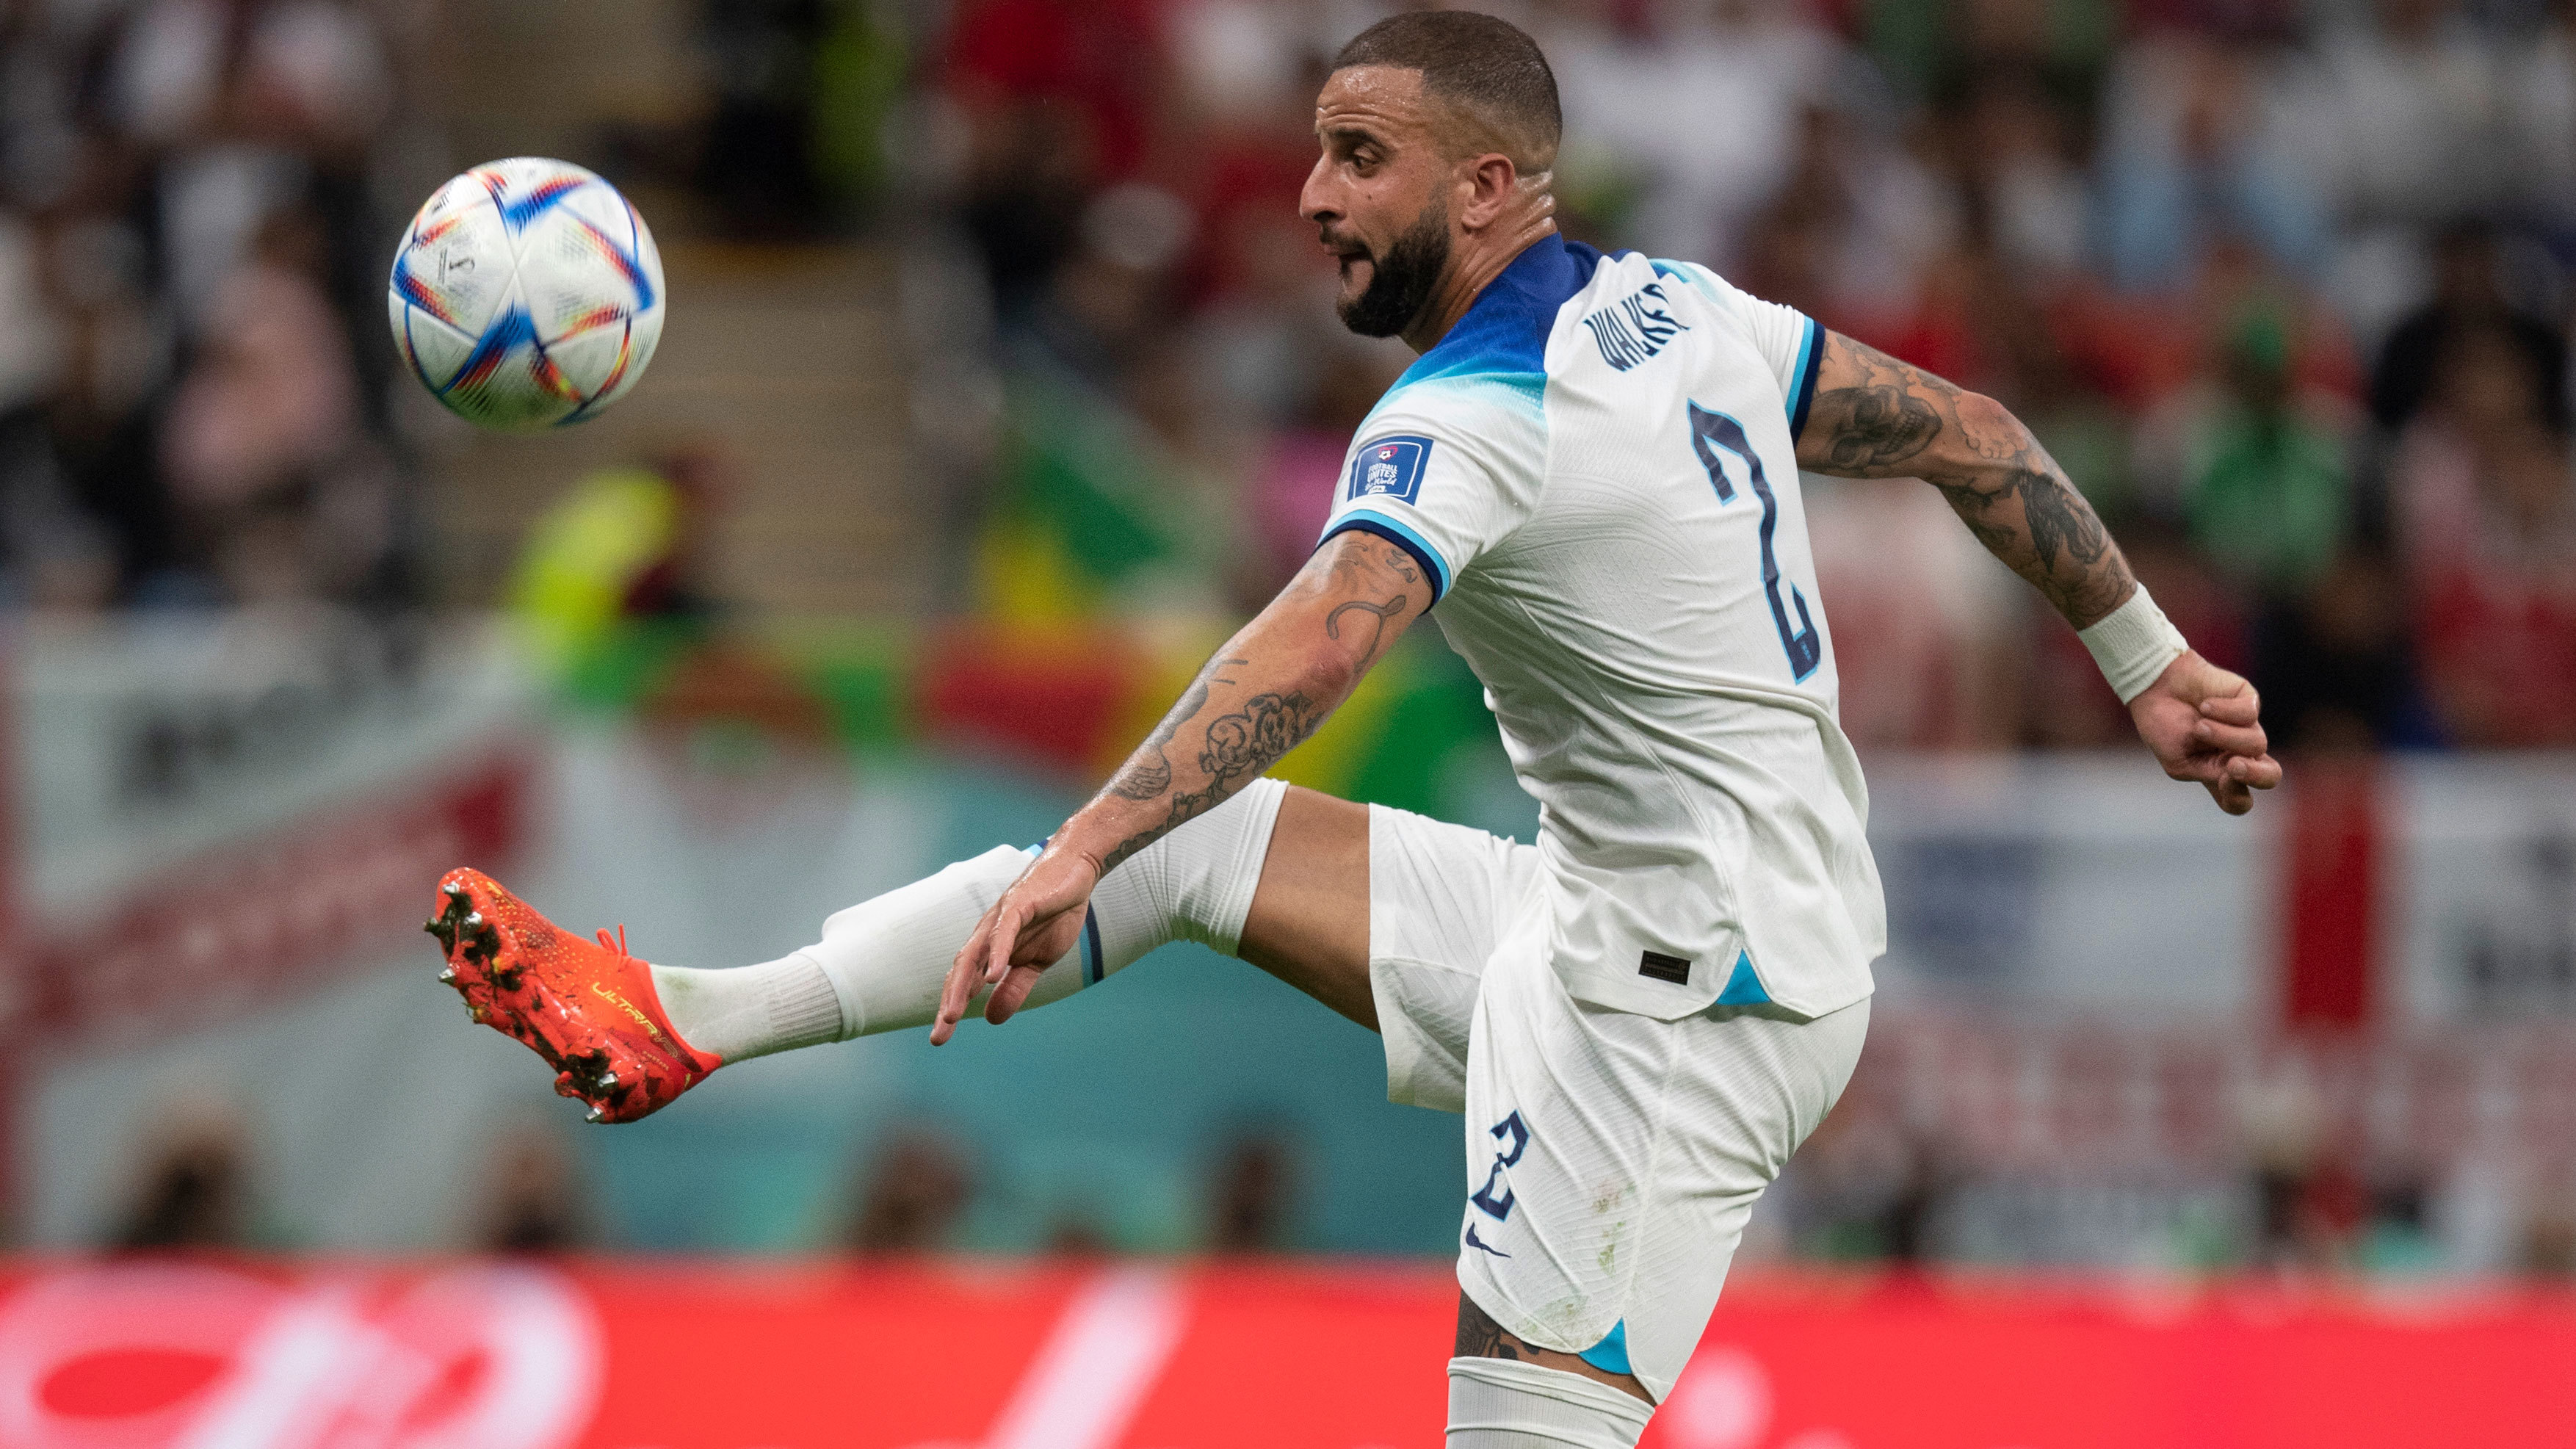 Coupe du monde de football 2022 | Kylian Mbappé affronte Kyle Walker pour décider du quart de finale Angleterre-France